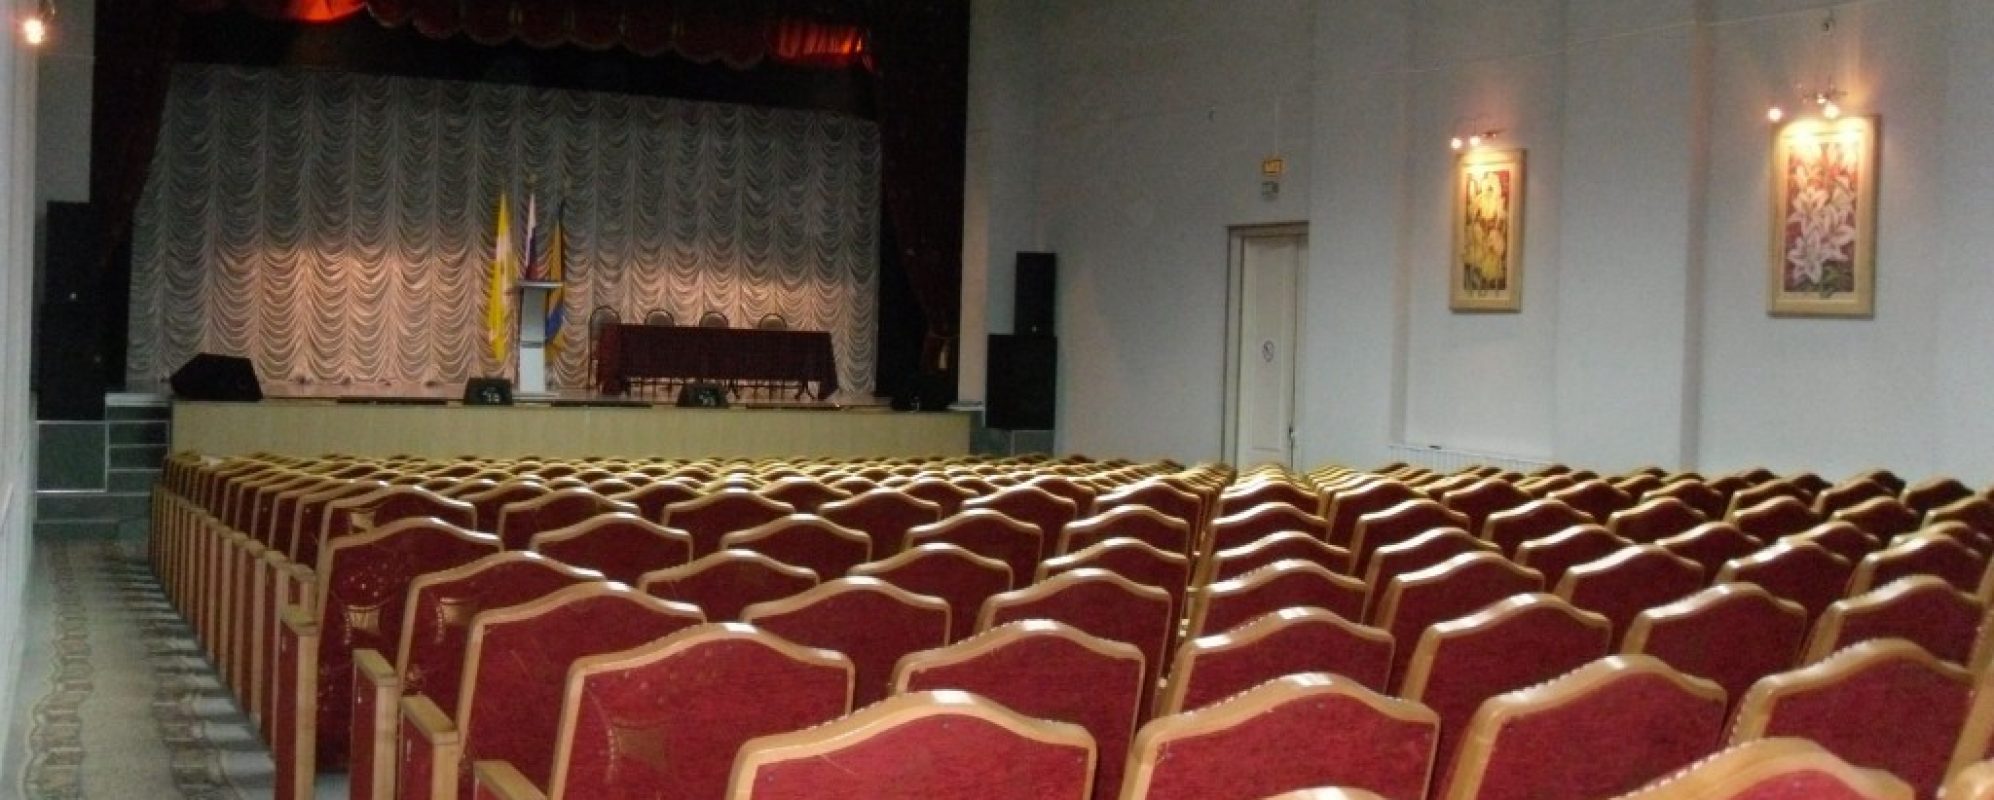 Фотографии концертного зала Концертный зал ГДК им. Горького